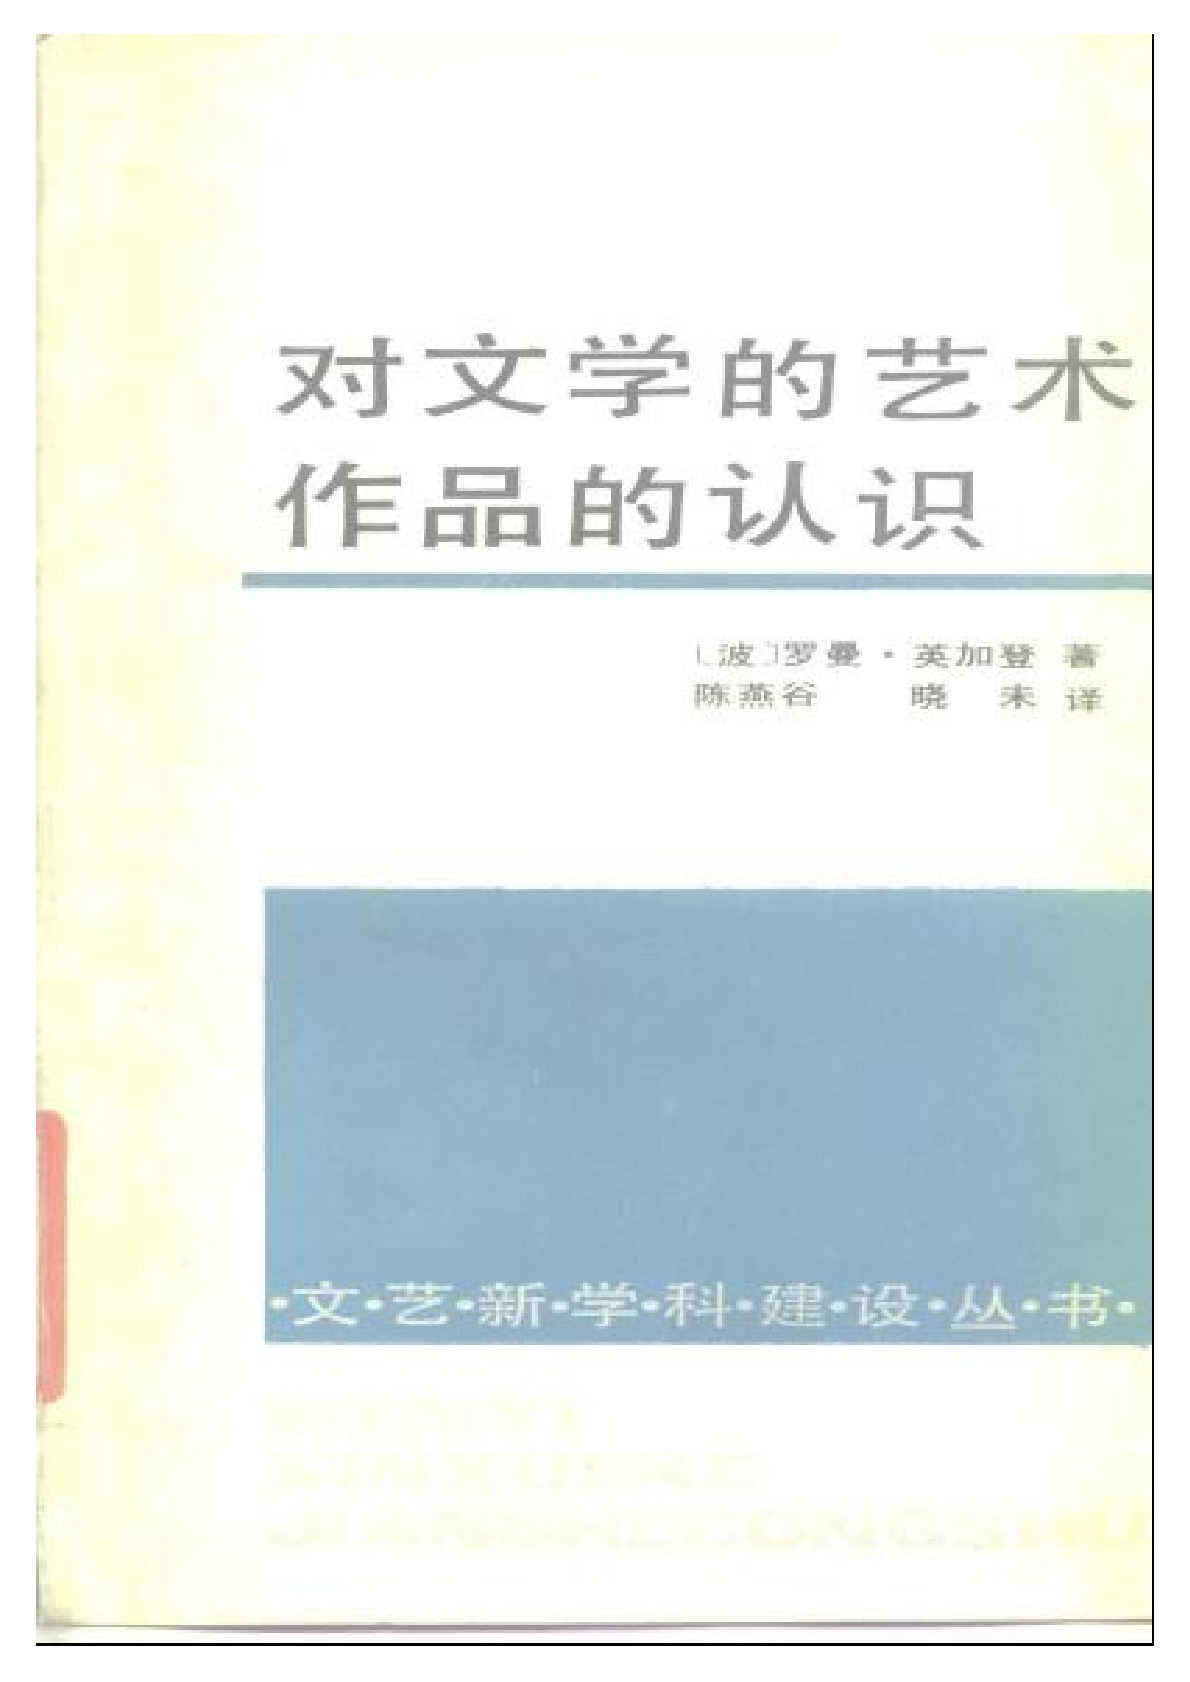 对文学的艺术作品的认识［波］英加登： ，中国文联出版公司，1988